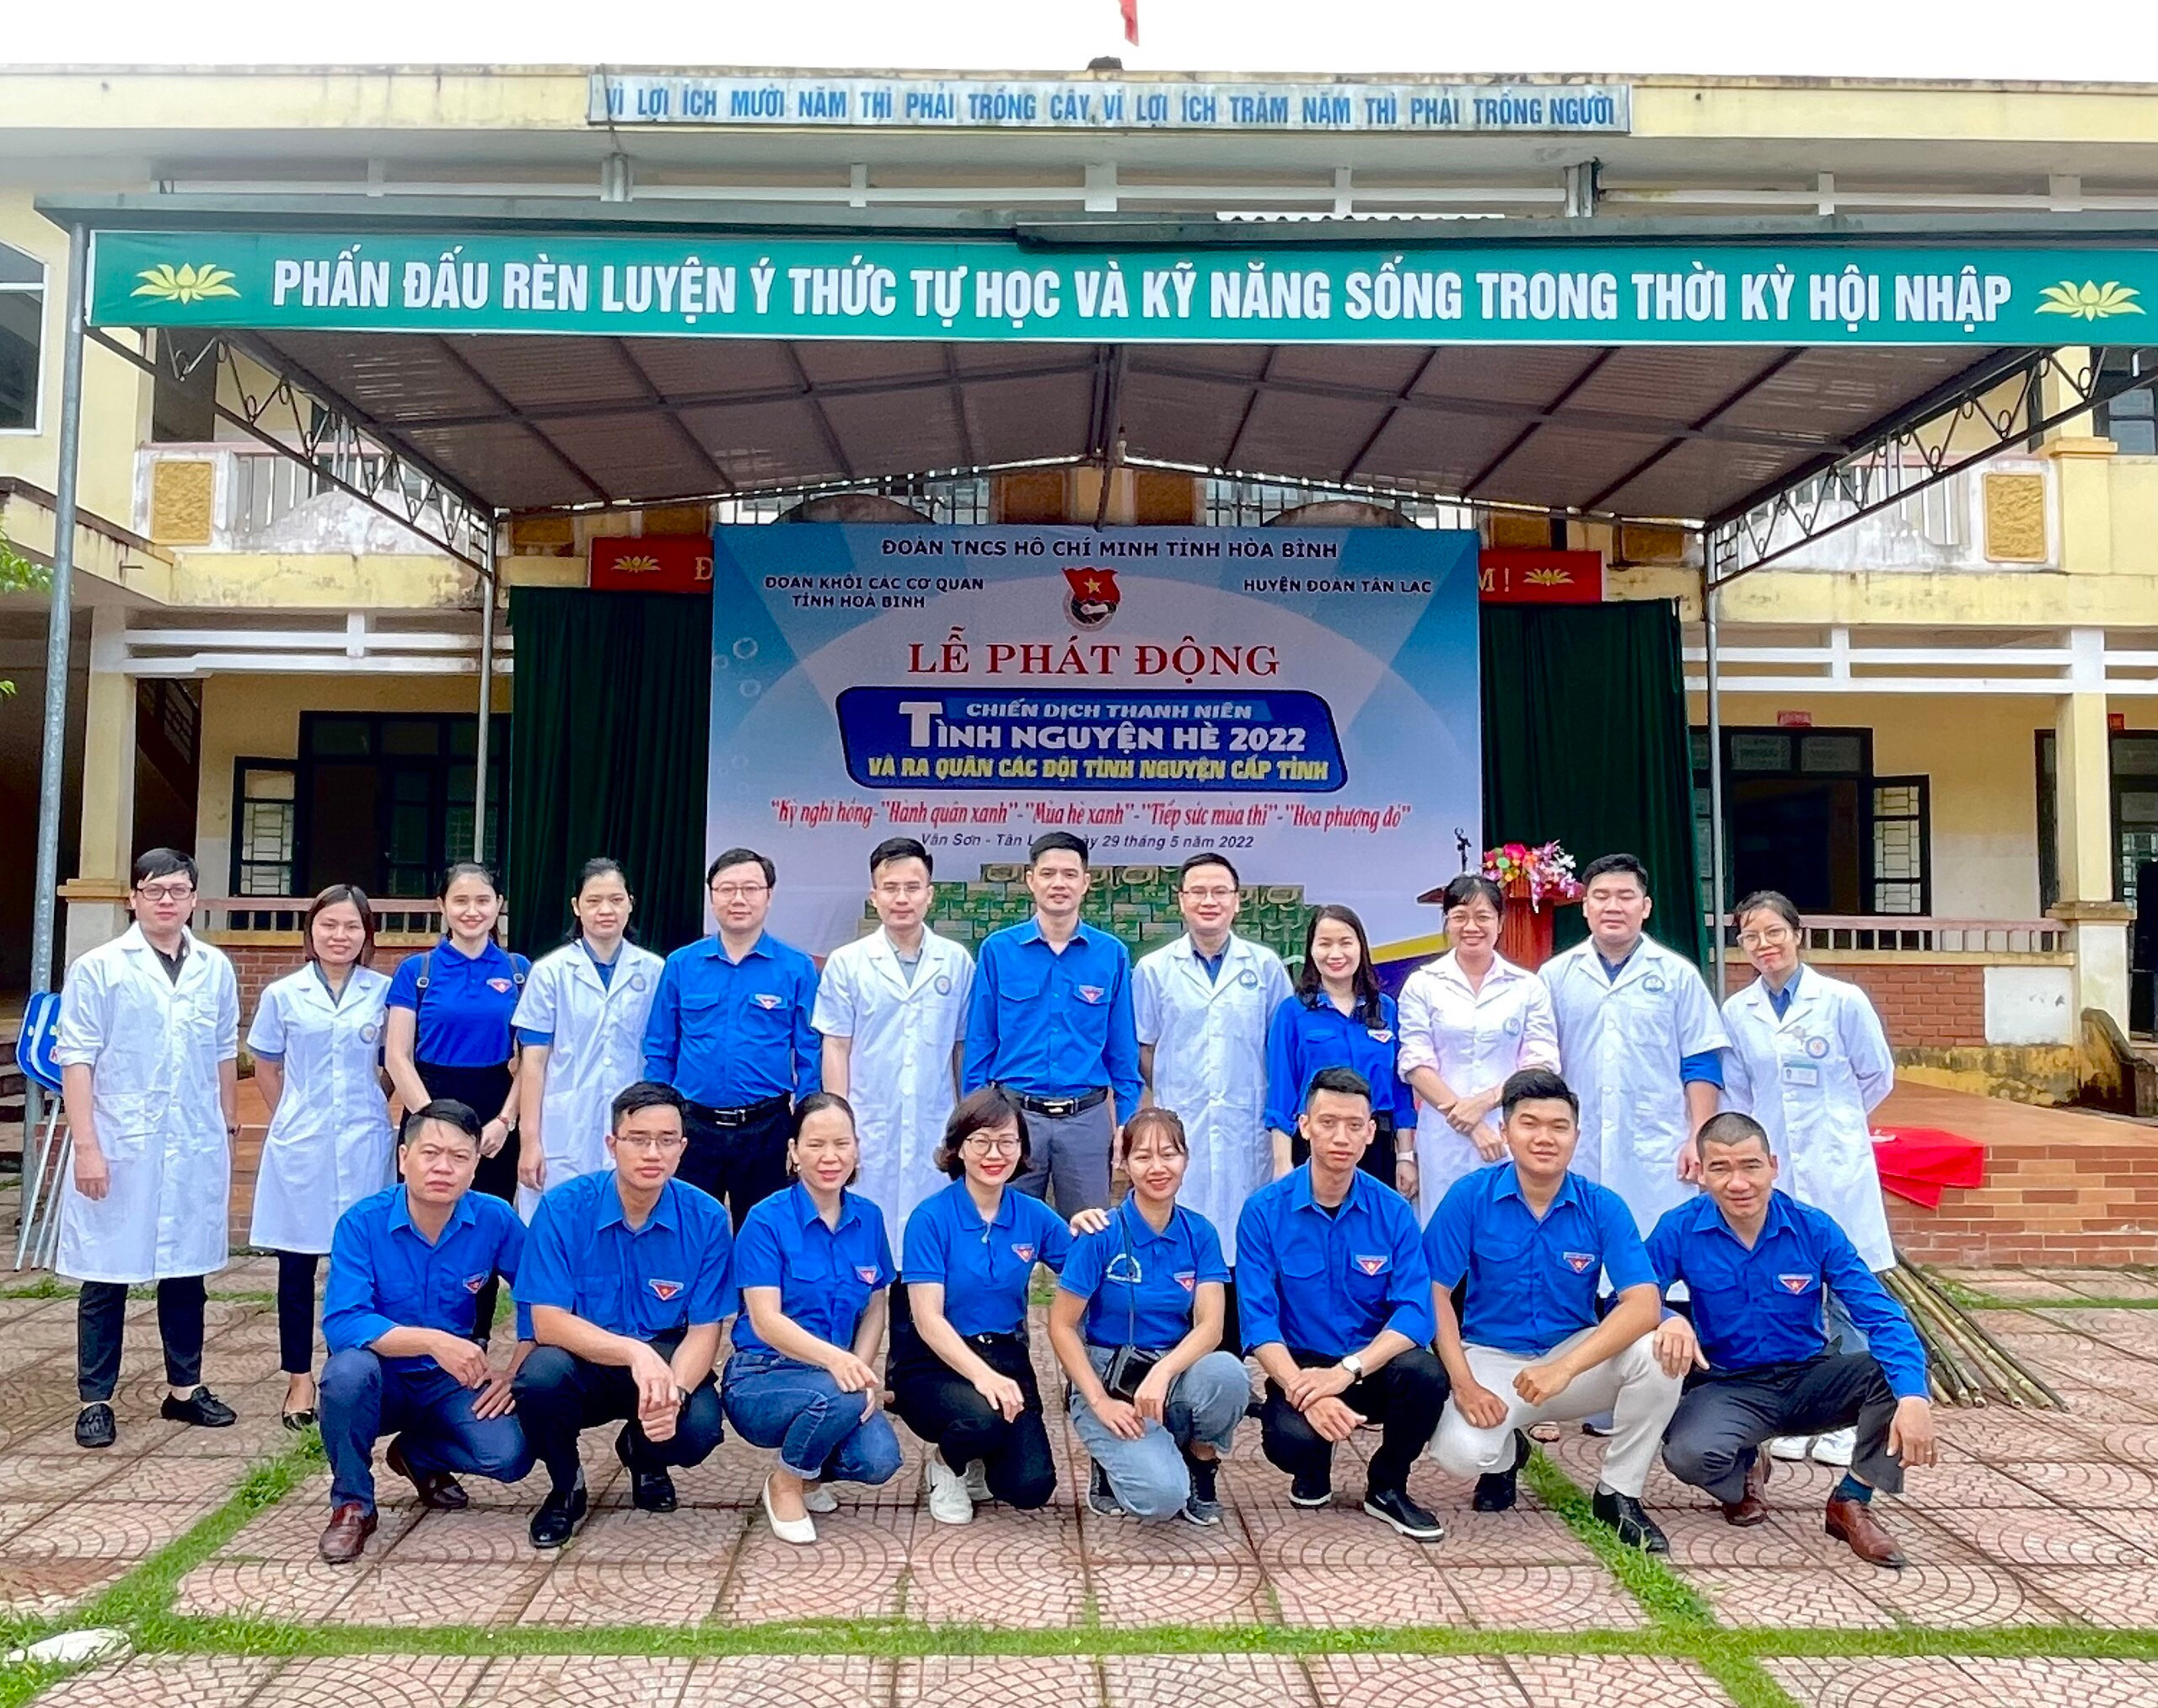  Đoàn thanh niên Bệnh viện đa khoa tỉnh khám và phát thuốc tình nguyện tại xã Vân Sơn, huyện Tân Lạc